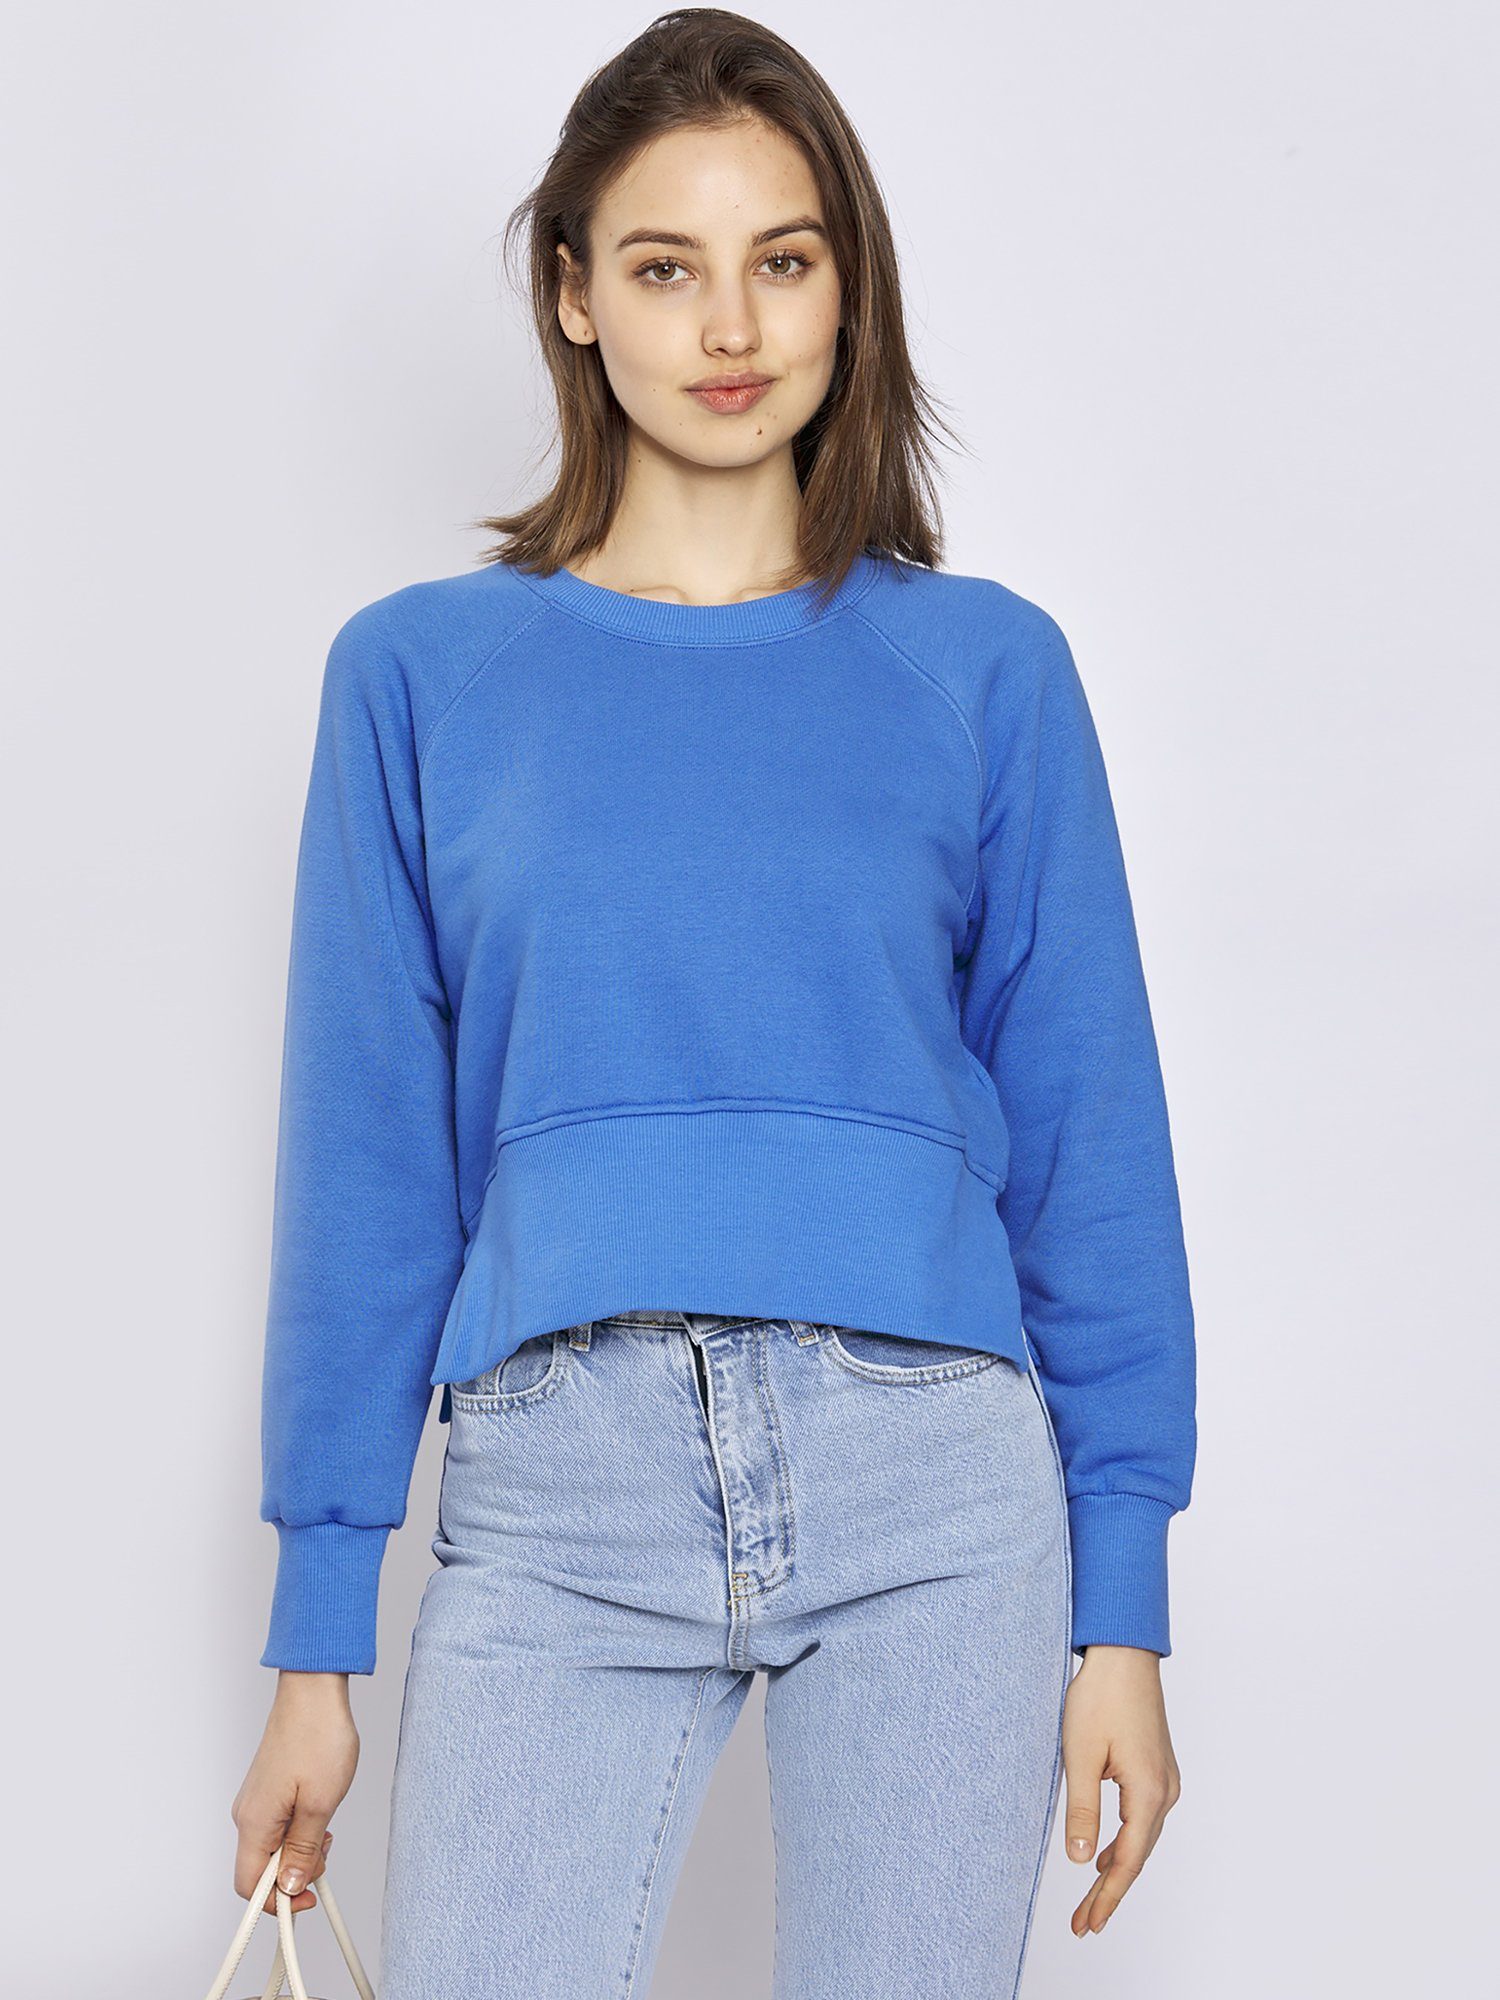 Sweater Blau Freshlions Sweatshirt Freshlions